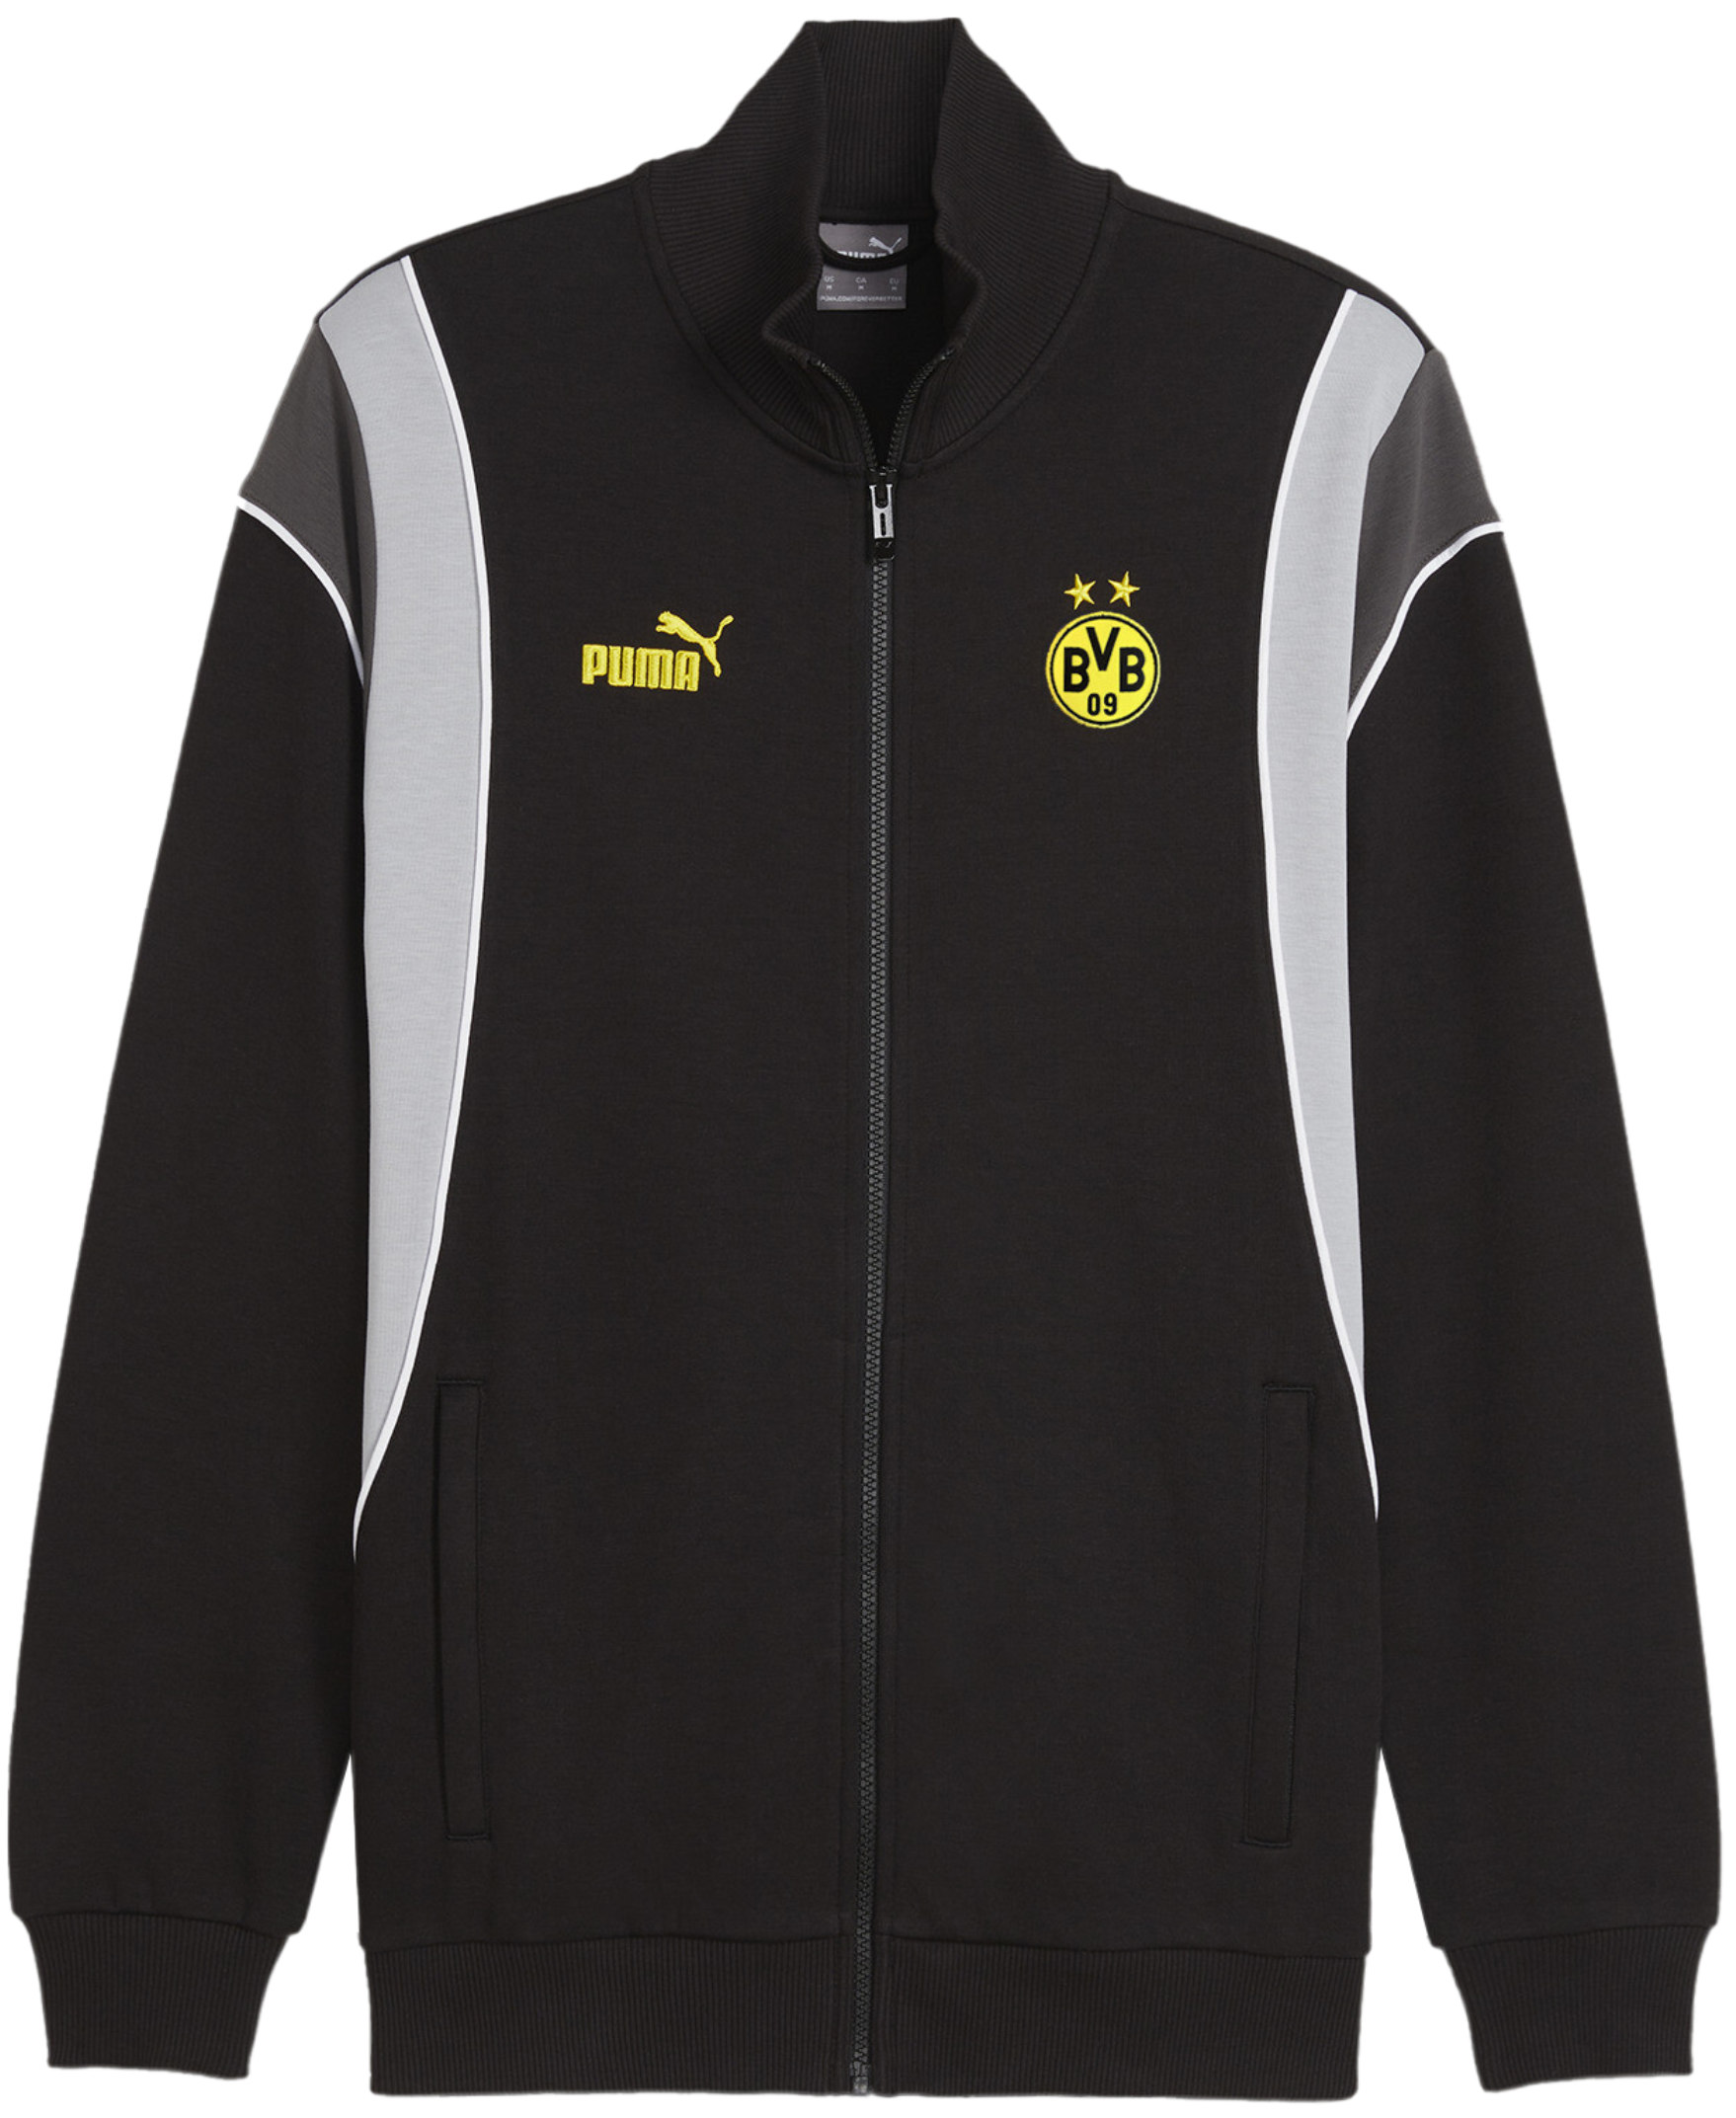 Jacheta Puma BVB Dortmund Ftbl Archive Trainings jacket